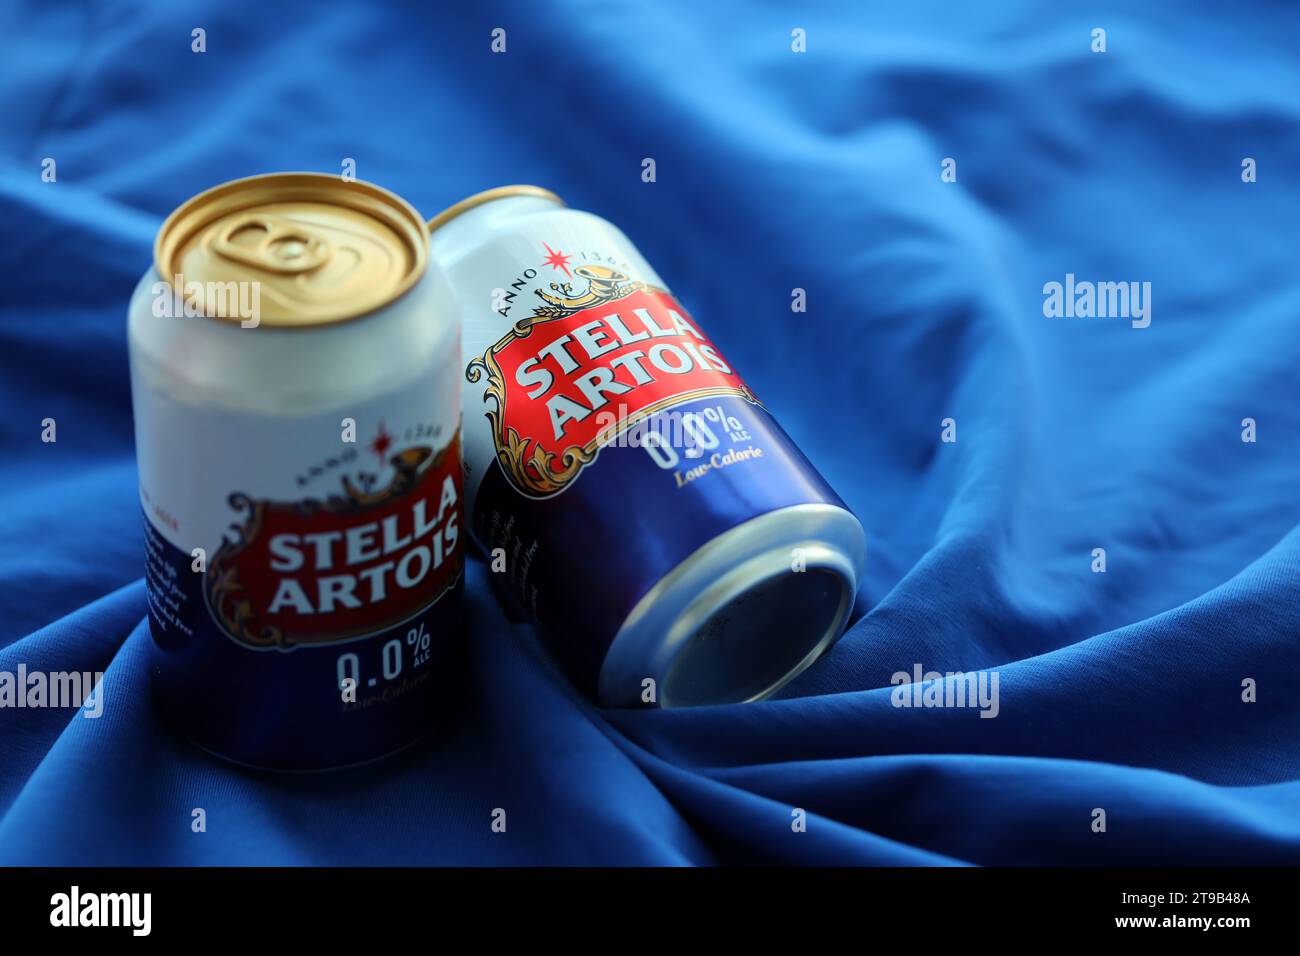 KIEV, UCRANIA - 4 DE MAYO de 2023: Lata de cerveza Stella Artois sin alcohol y baja en calorías, elaborada por una cervecería belga Foto de stock